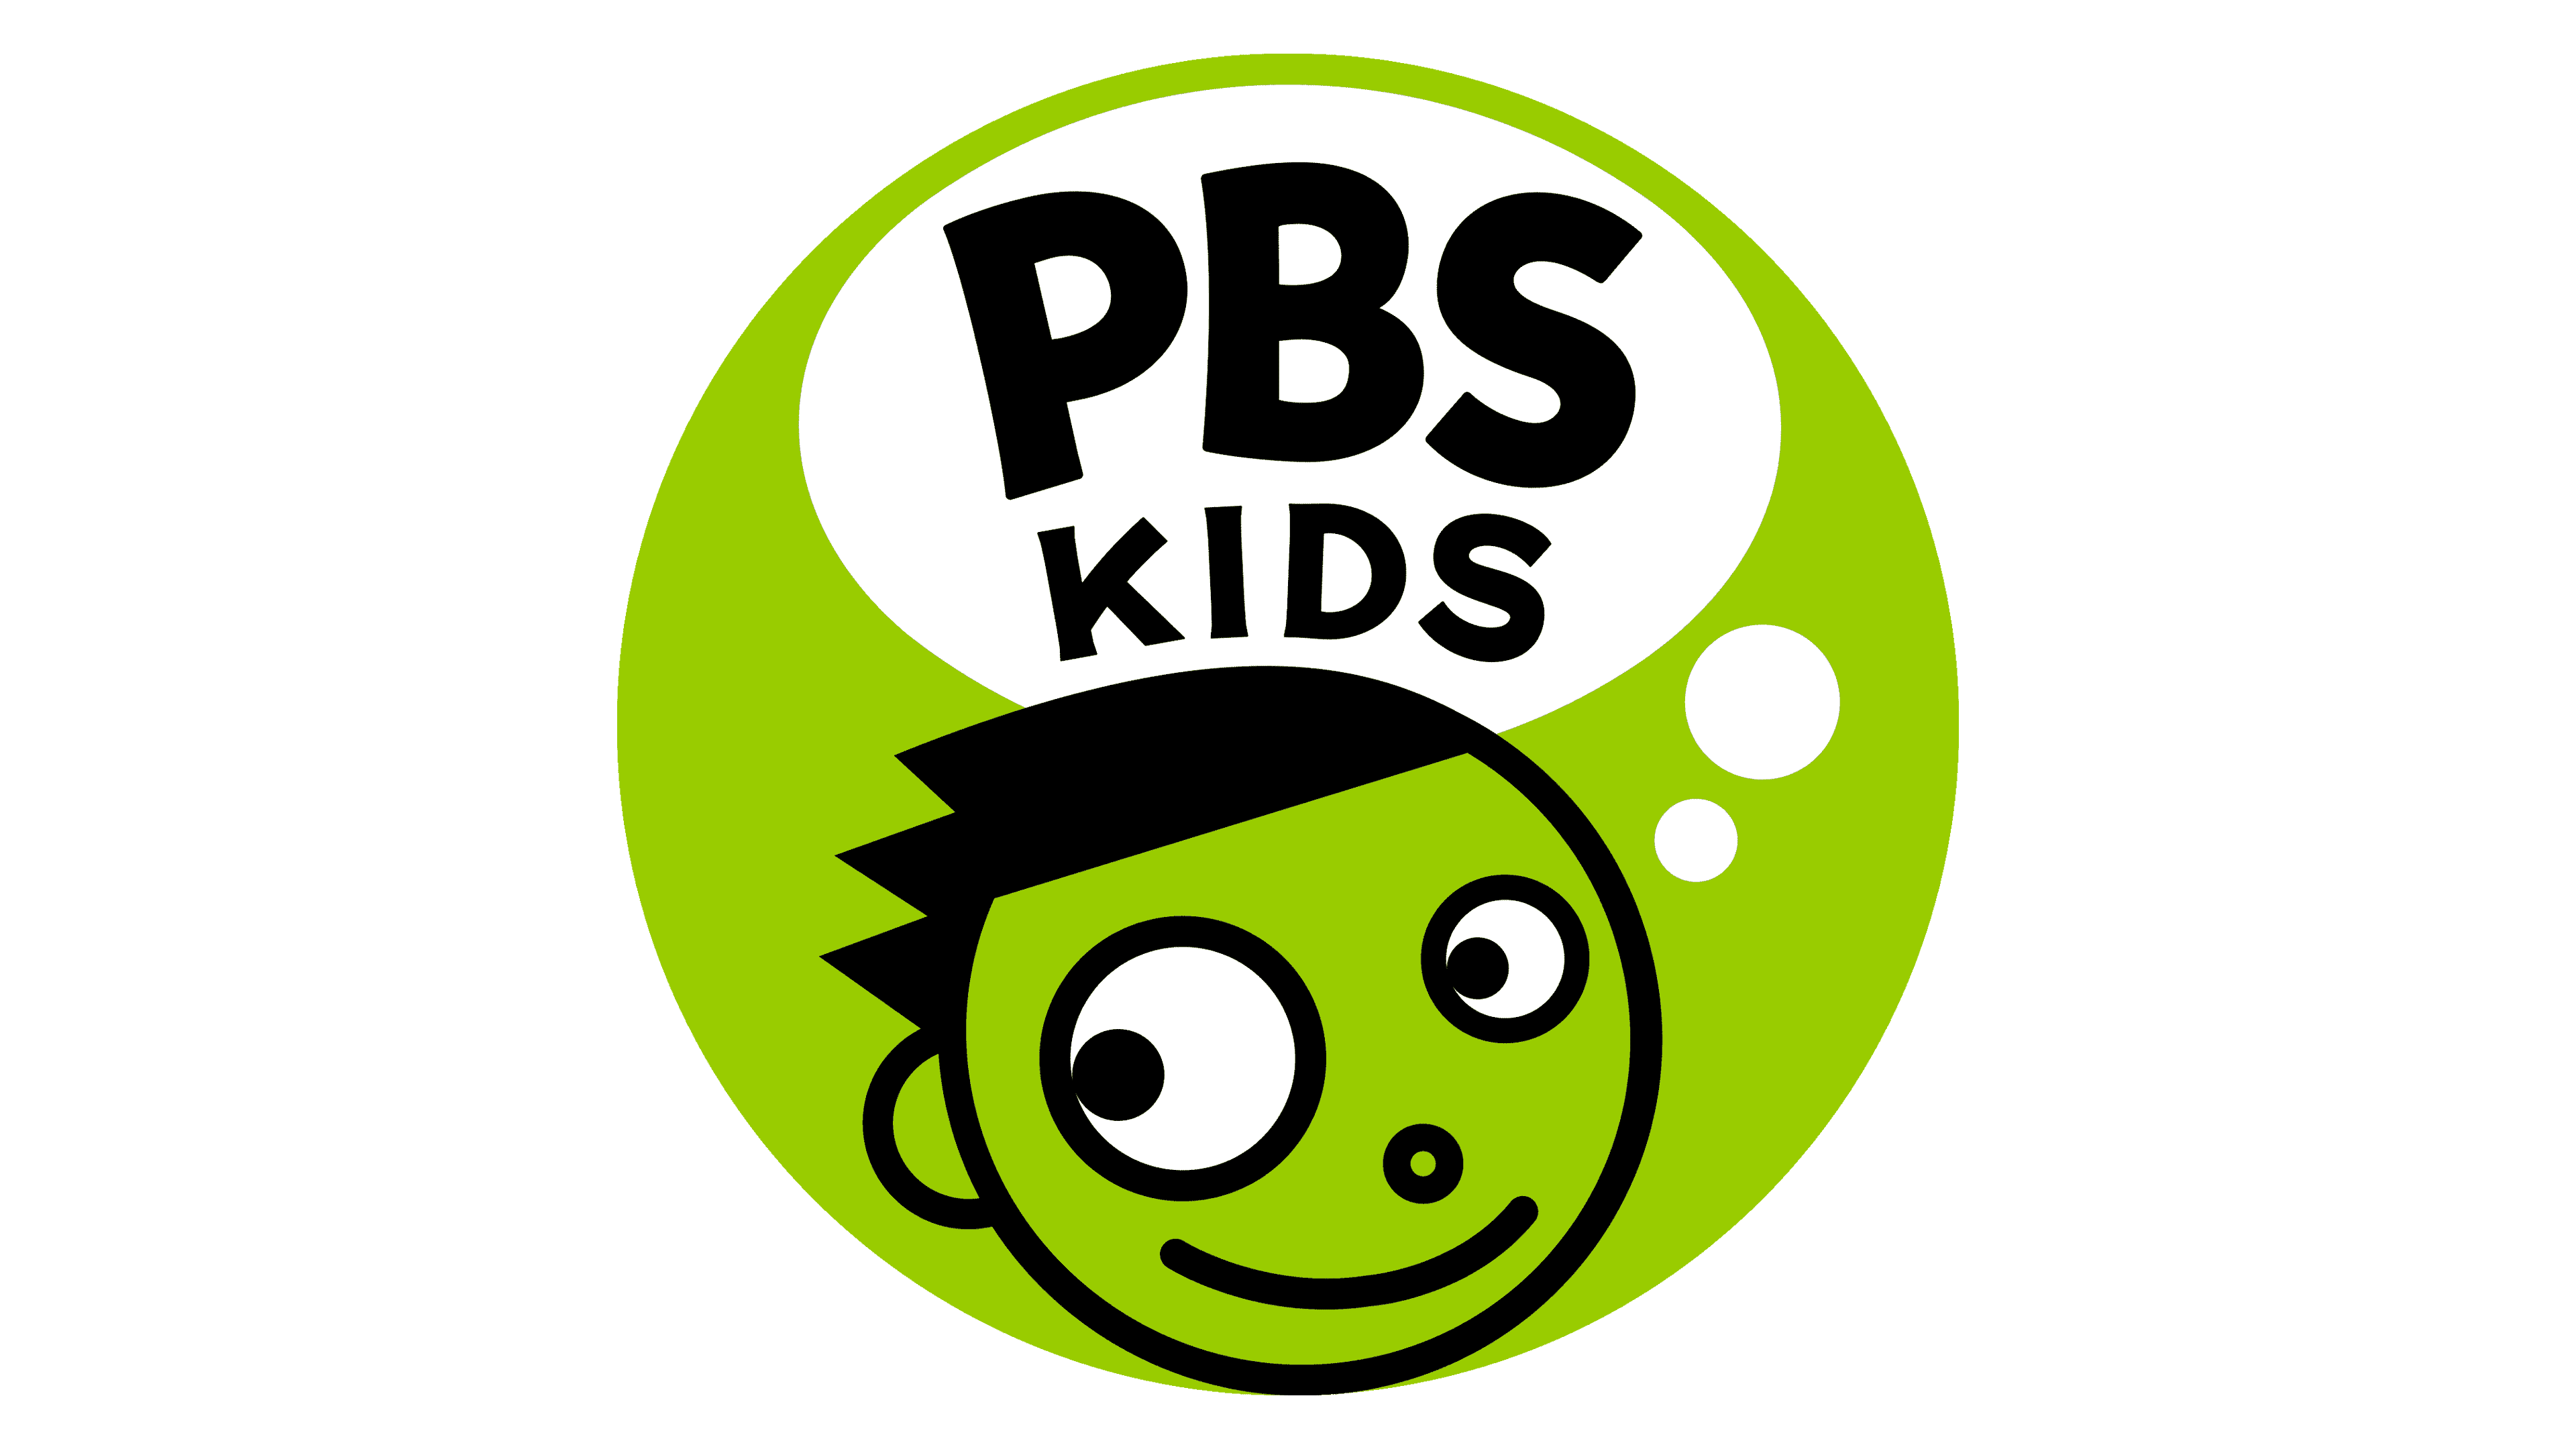 pbs kids logo 1993